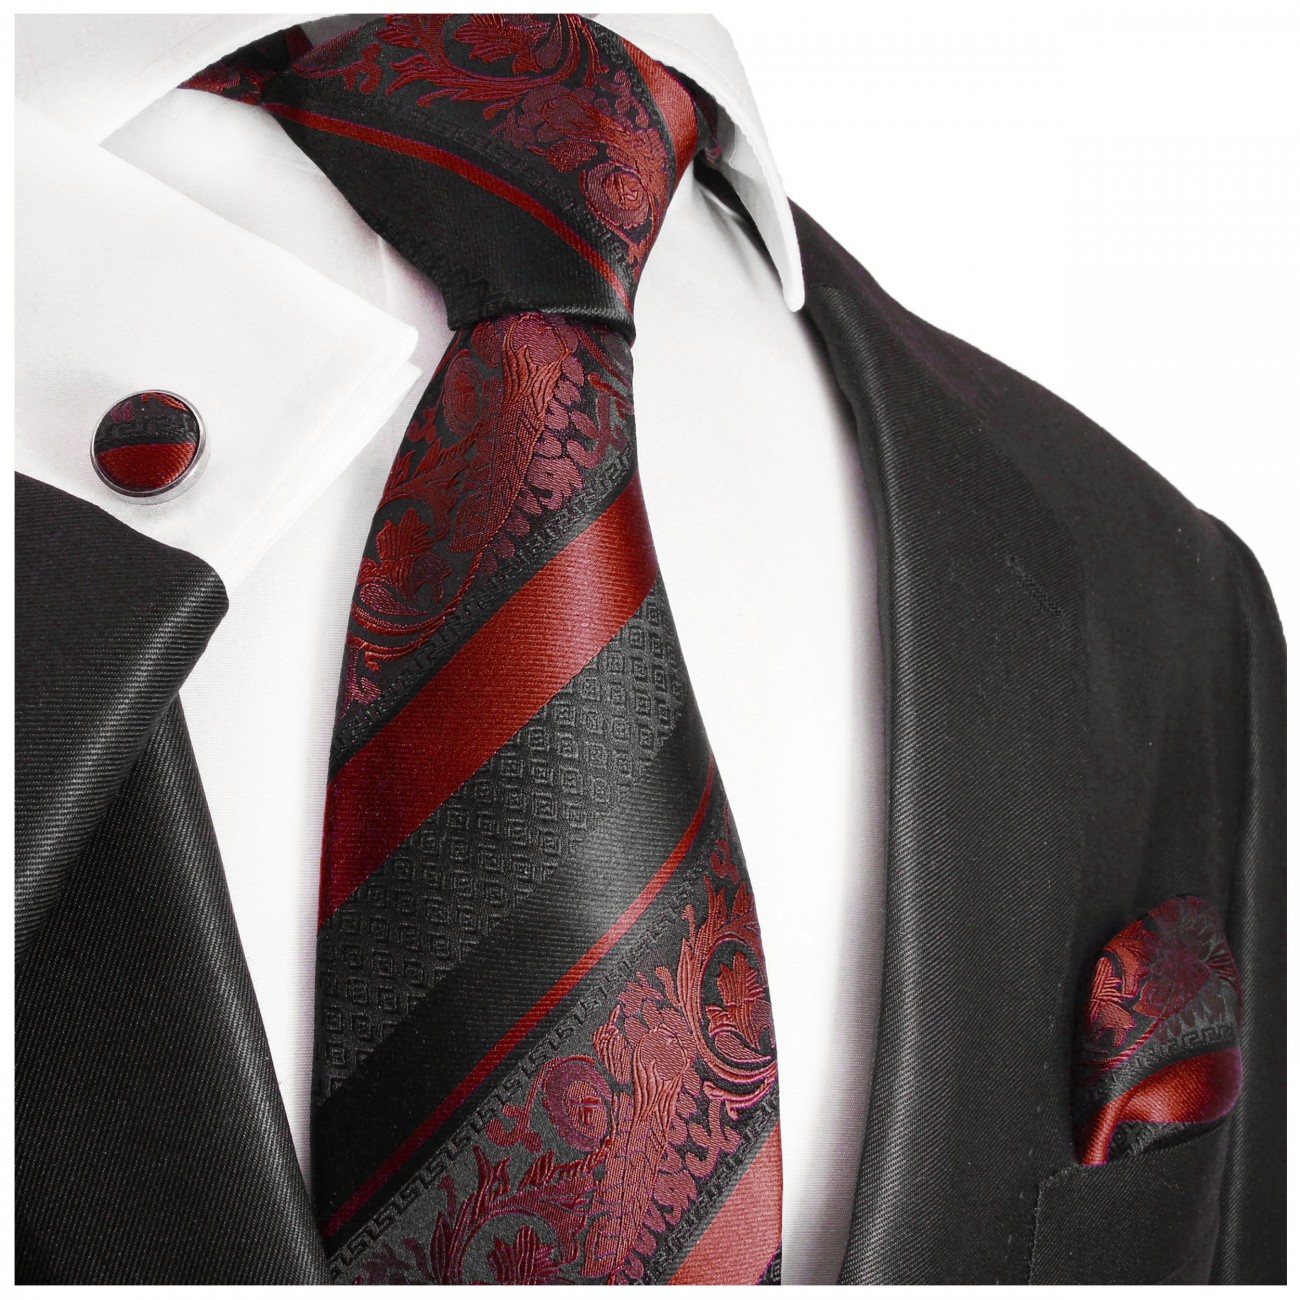 Krawatte weinrot bordeaux rot barock gestreift Seide mit Einstecktuch und Manschettenknöpfe